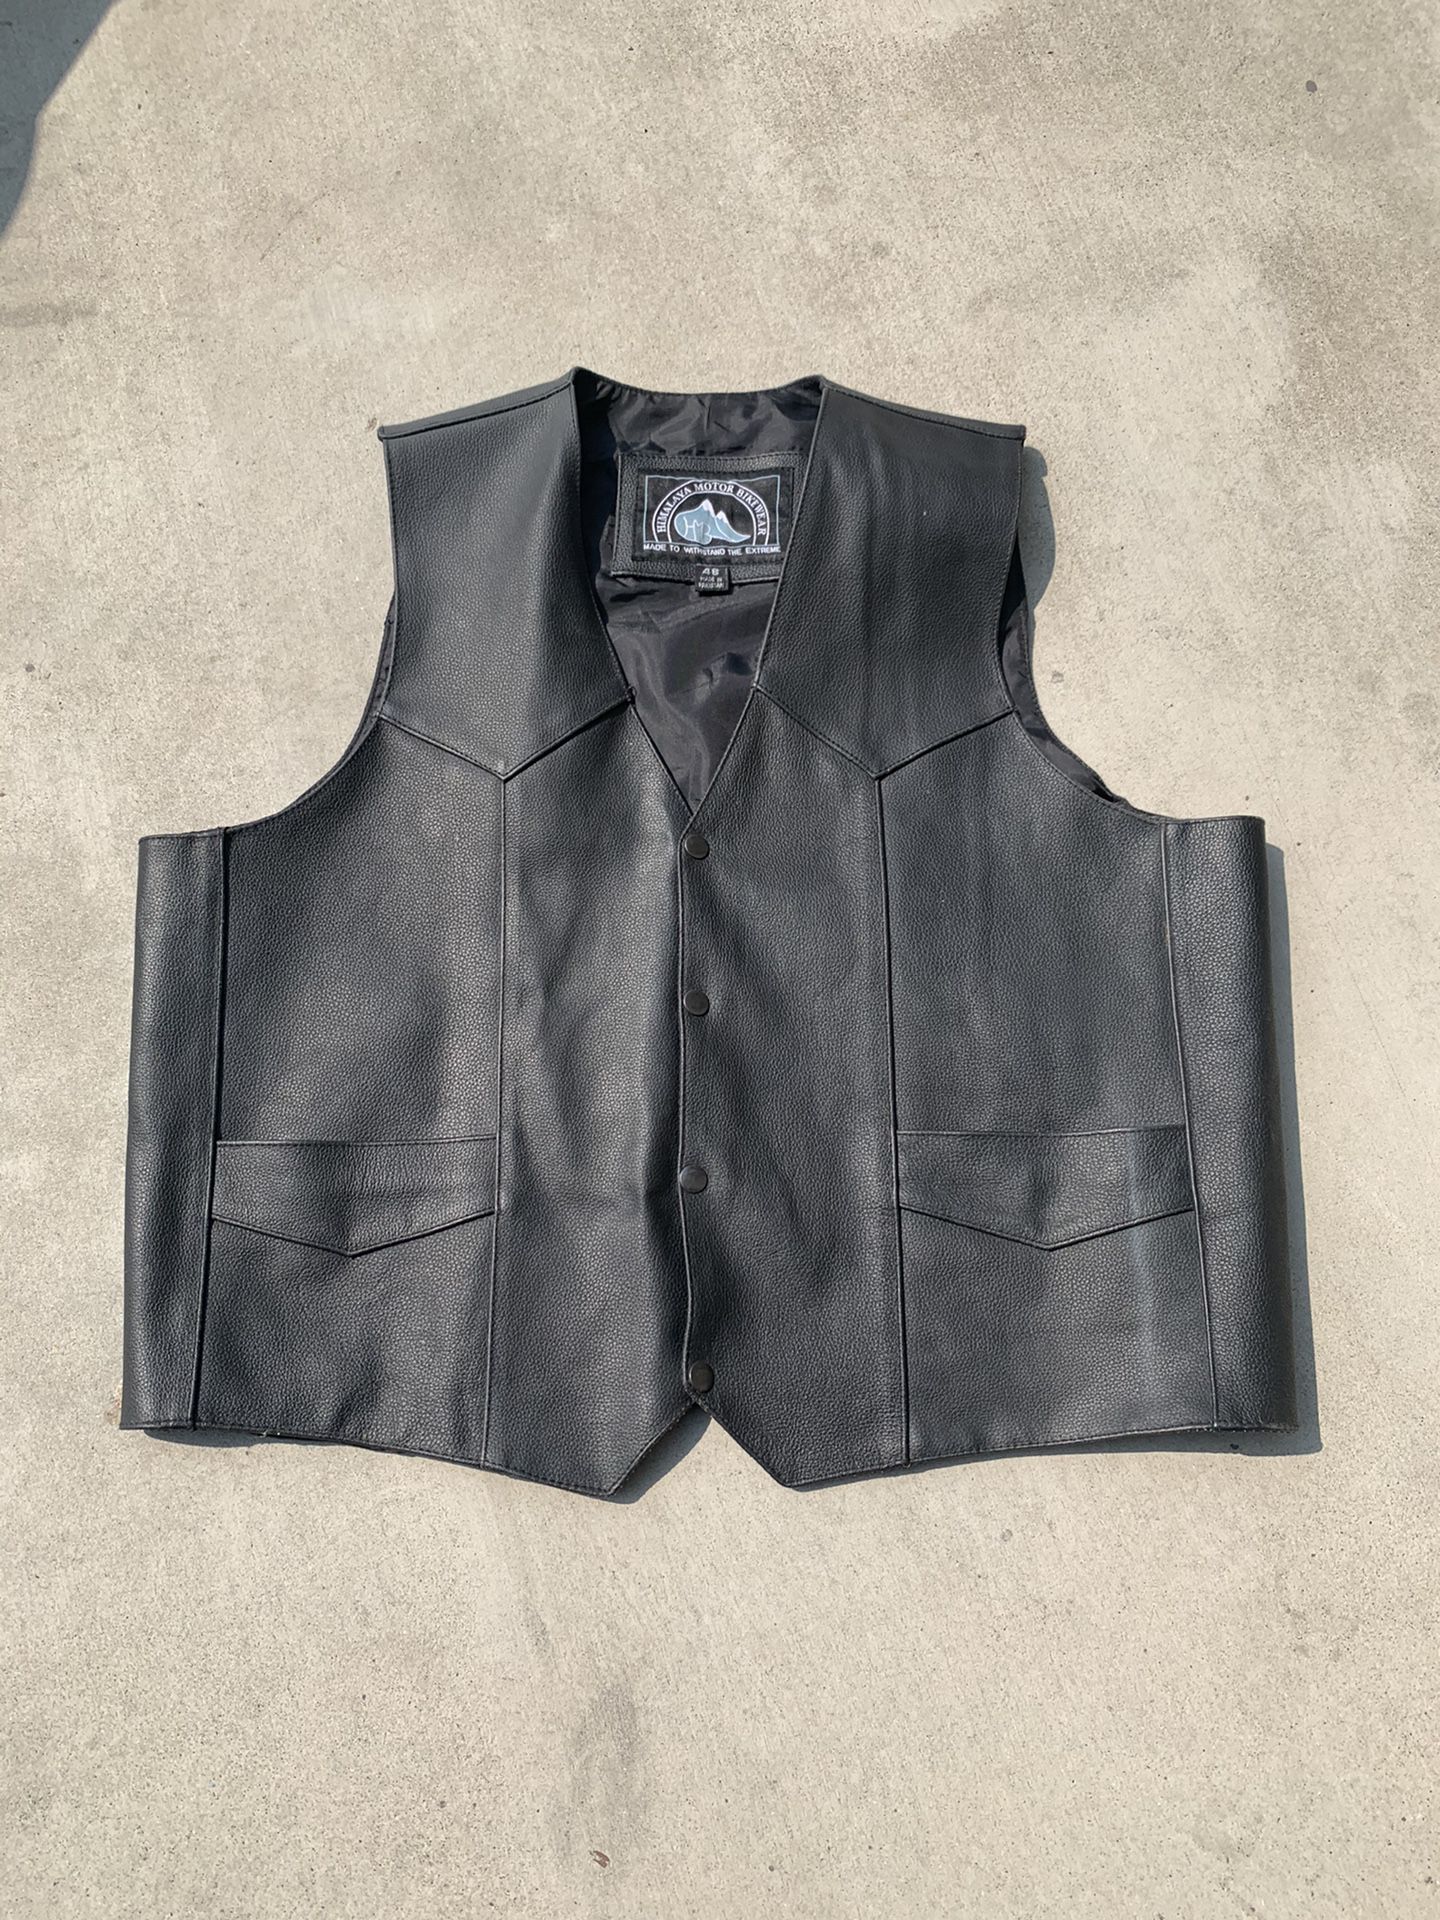 Leather biker vest black motorcycle